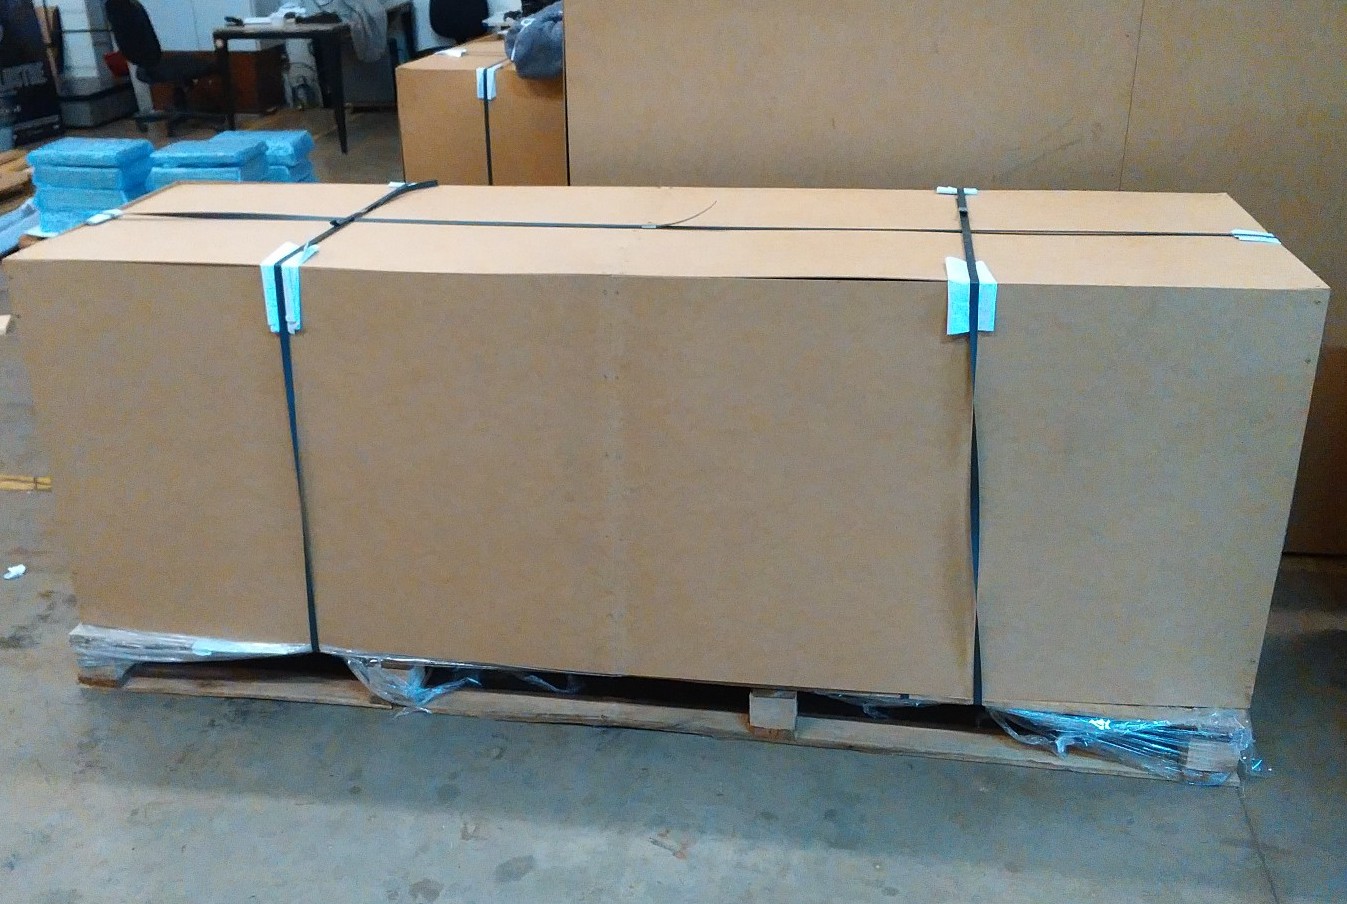 Impressora de grande formato HP Designjet 4500 pronta para transportadora